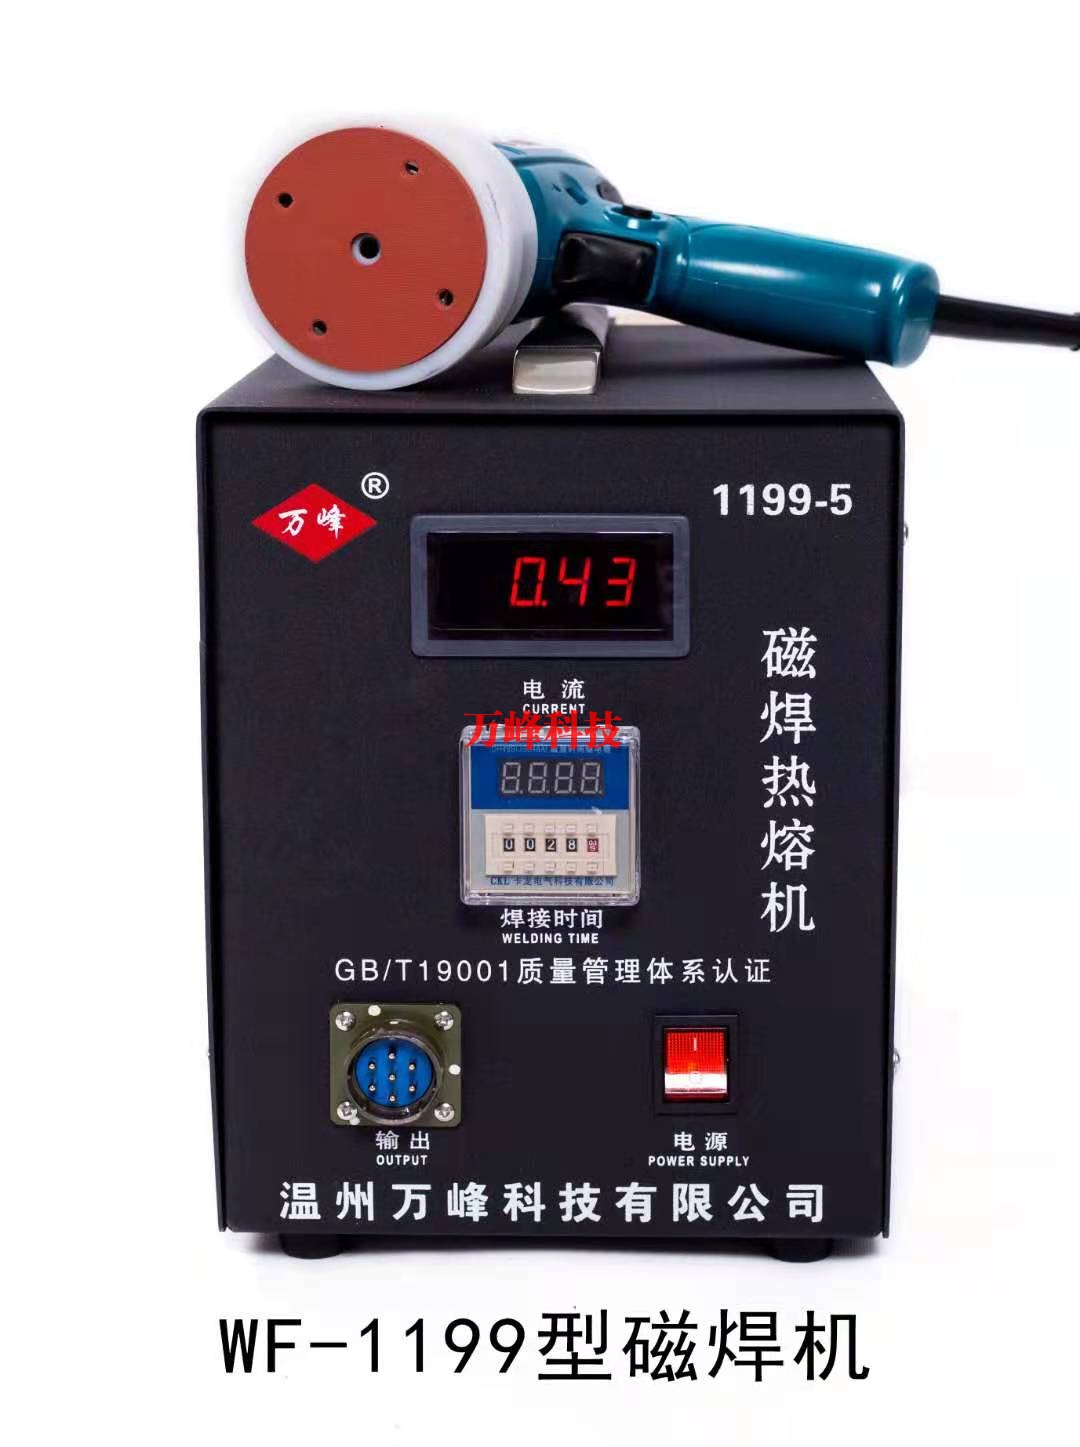 阿里WF-1199型磁焊热熔机